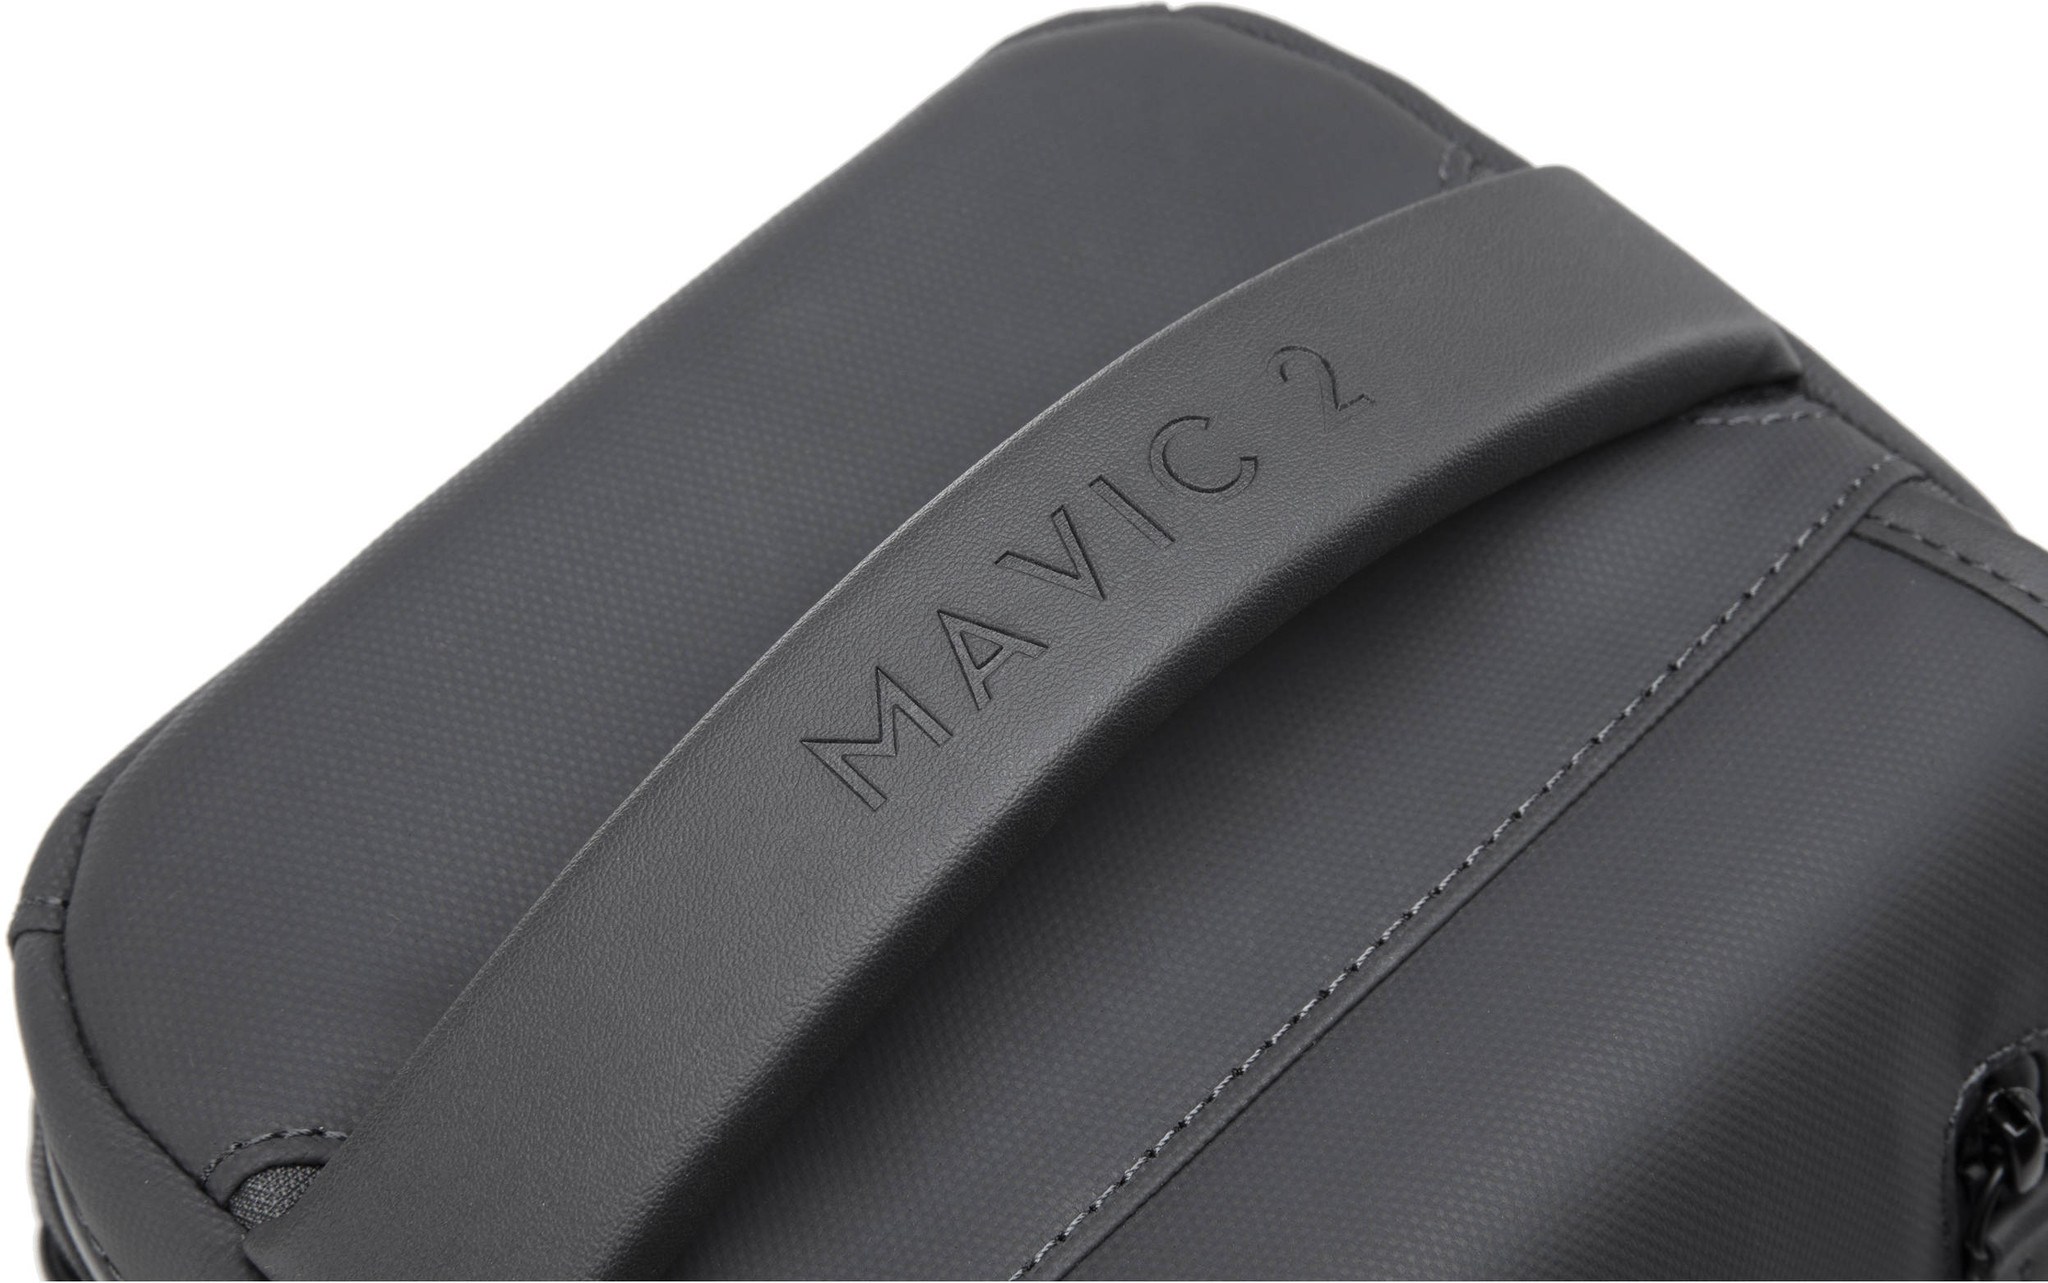 DJI Mavic 2 Pro / Zoom Shoulder Bag tas